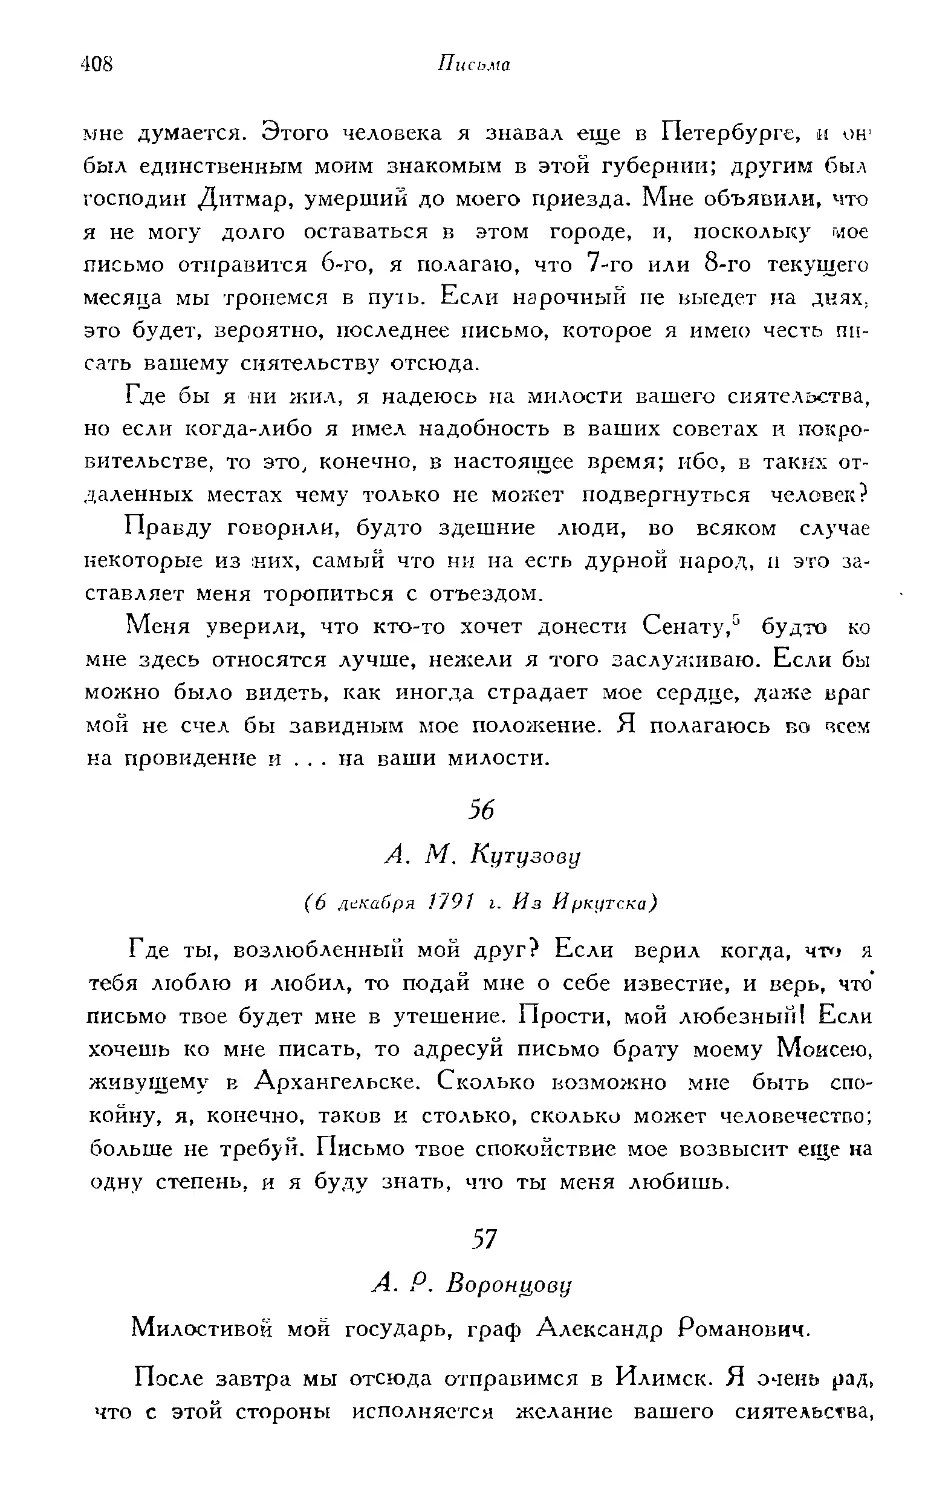 56. А. М. Кутузову (6 декабря 1791 г.)
57—82. А. Р. Воронцову (1791—1797 гг.)